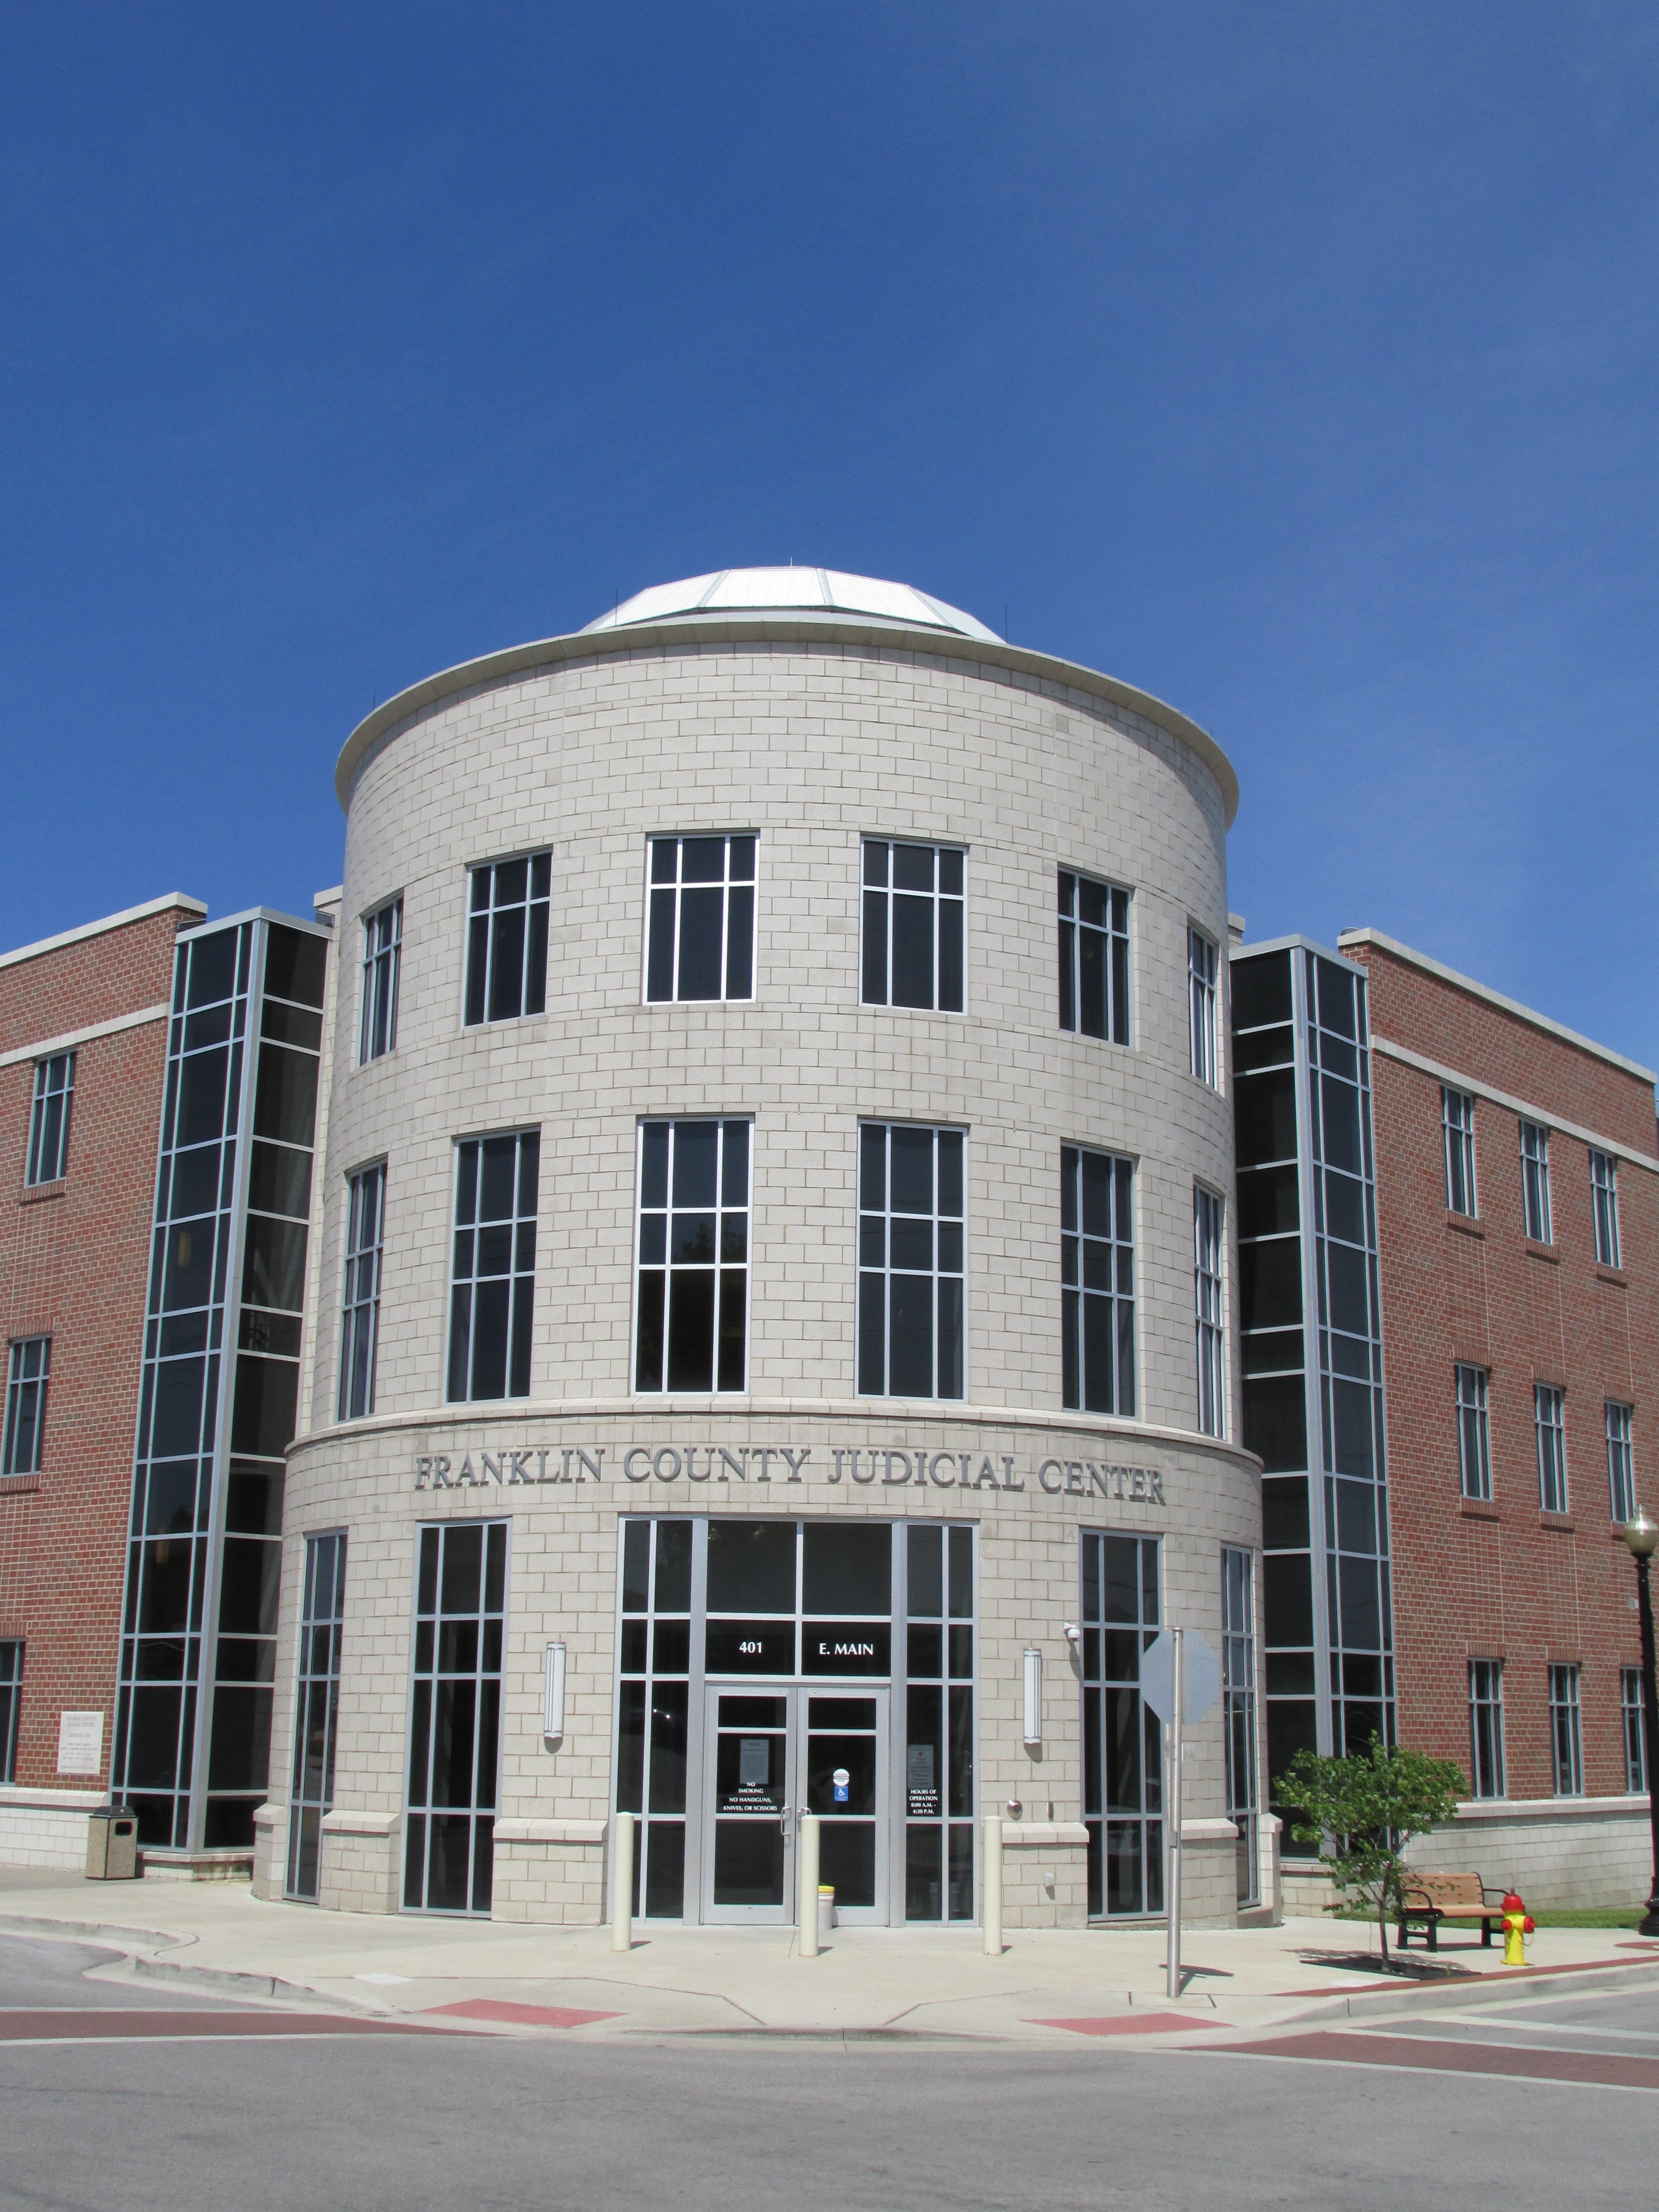 Franklin County Judicial Center in Union, Missouri